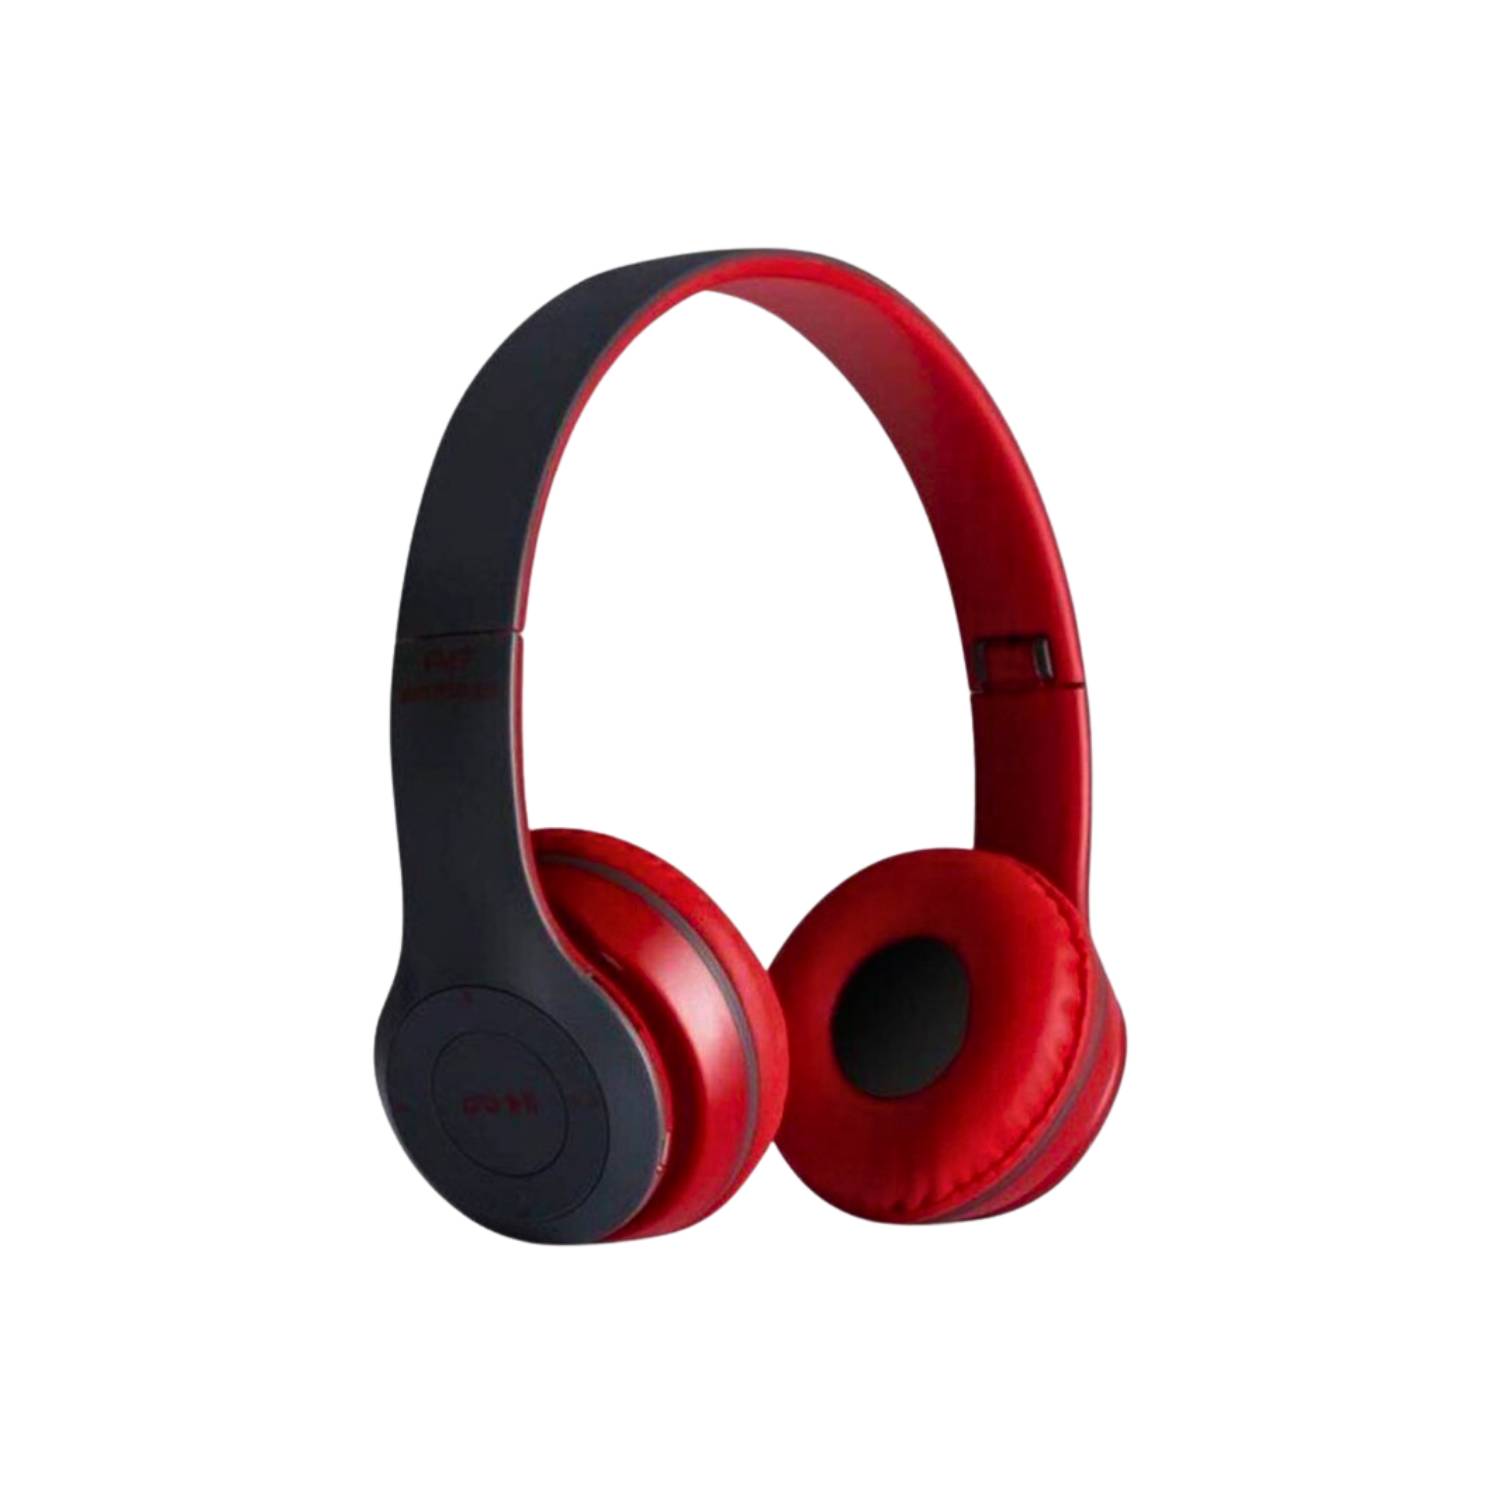 GENERICO Audífonos Bluetooth P47 Con Radio Mp3 y Micrófono Incorporado  Rojo…